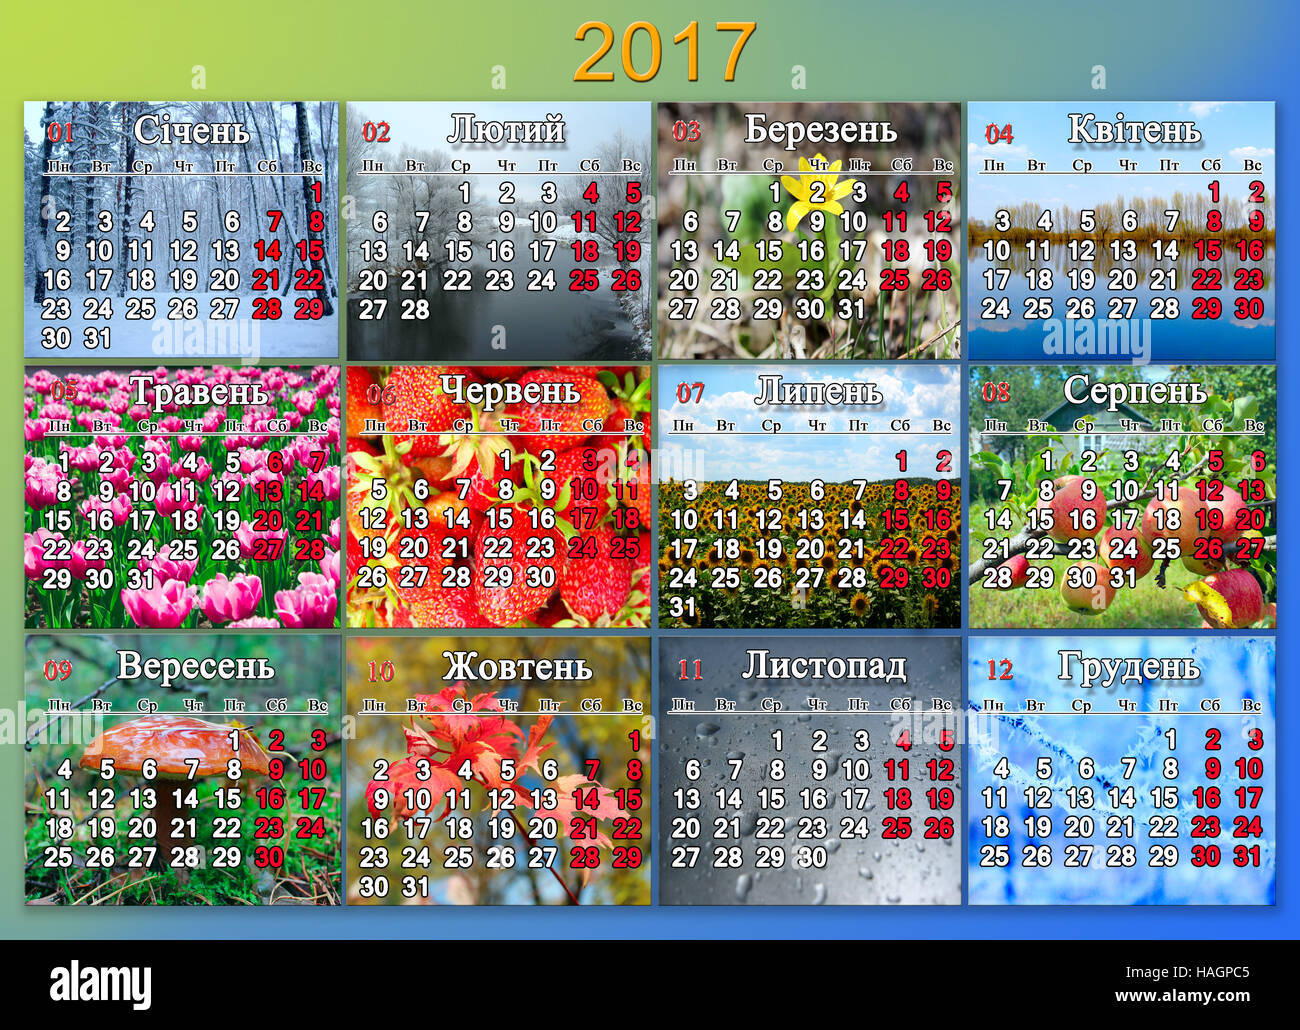 Kalender für das Jahr 2017 mit Foto der Natur für jeden Monat mit Inschriften Wochentage und Monate in ukrainischer Sprache Stockfoto